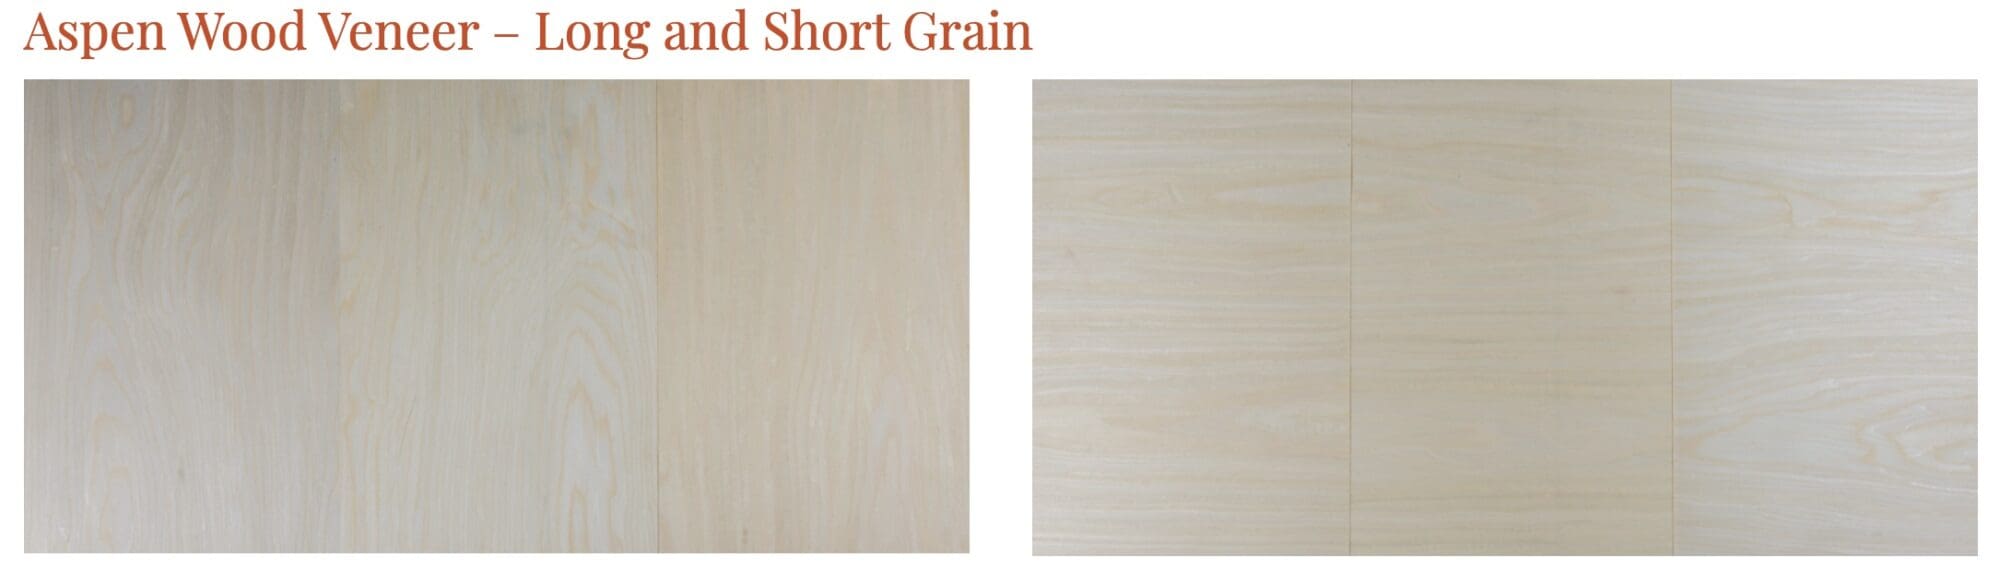 Aspen Wood Veneer Long and Short Grain